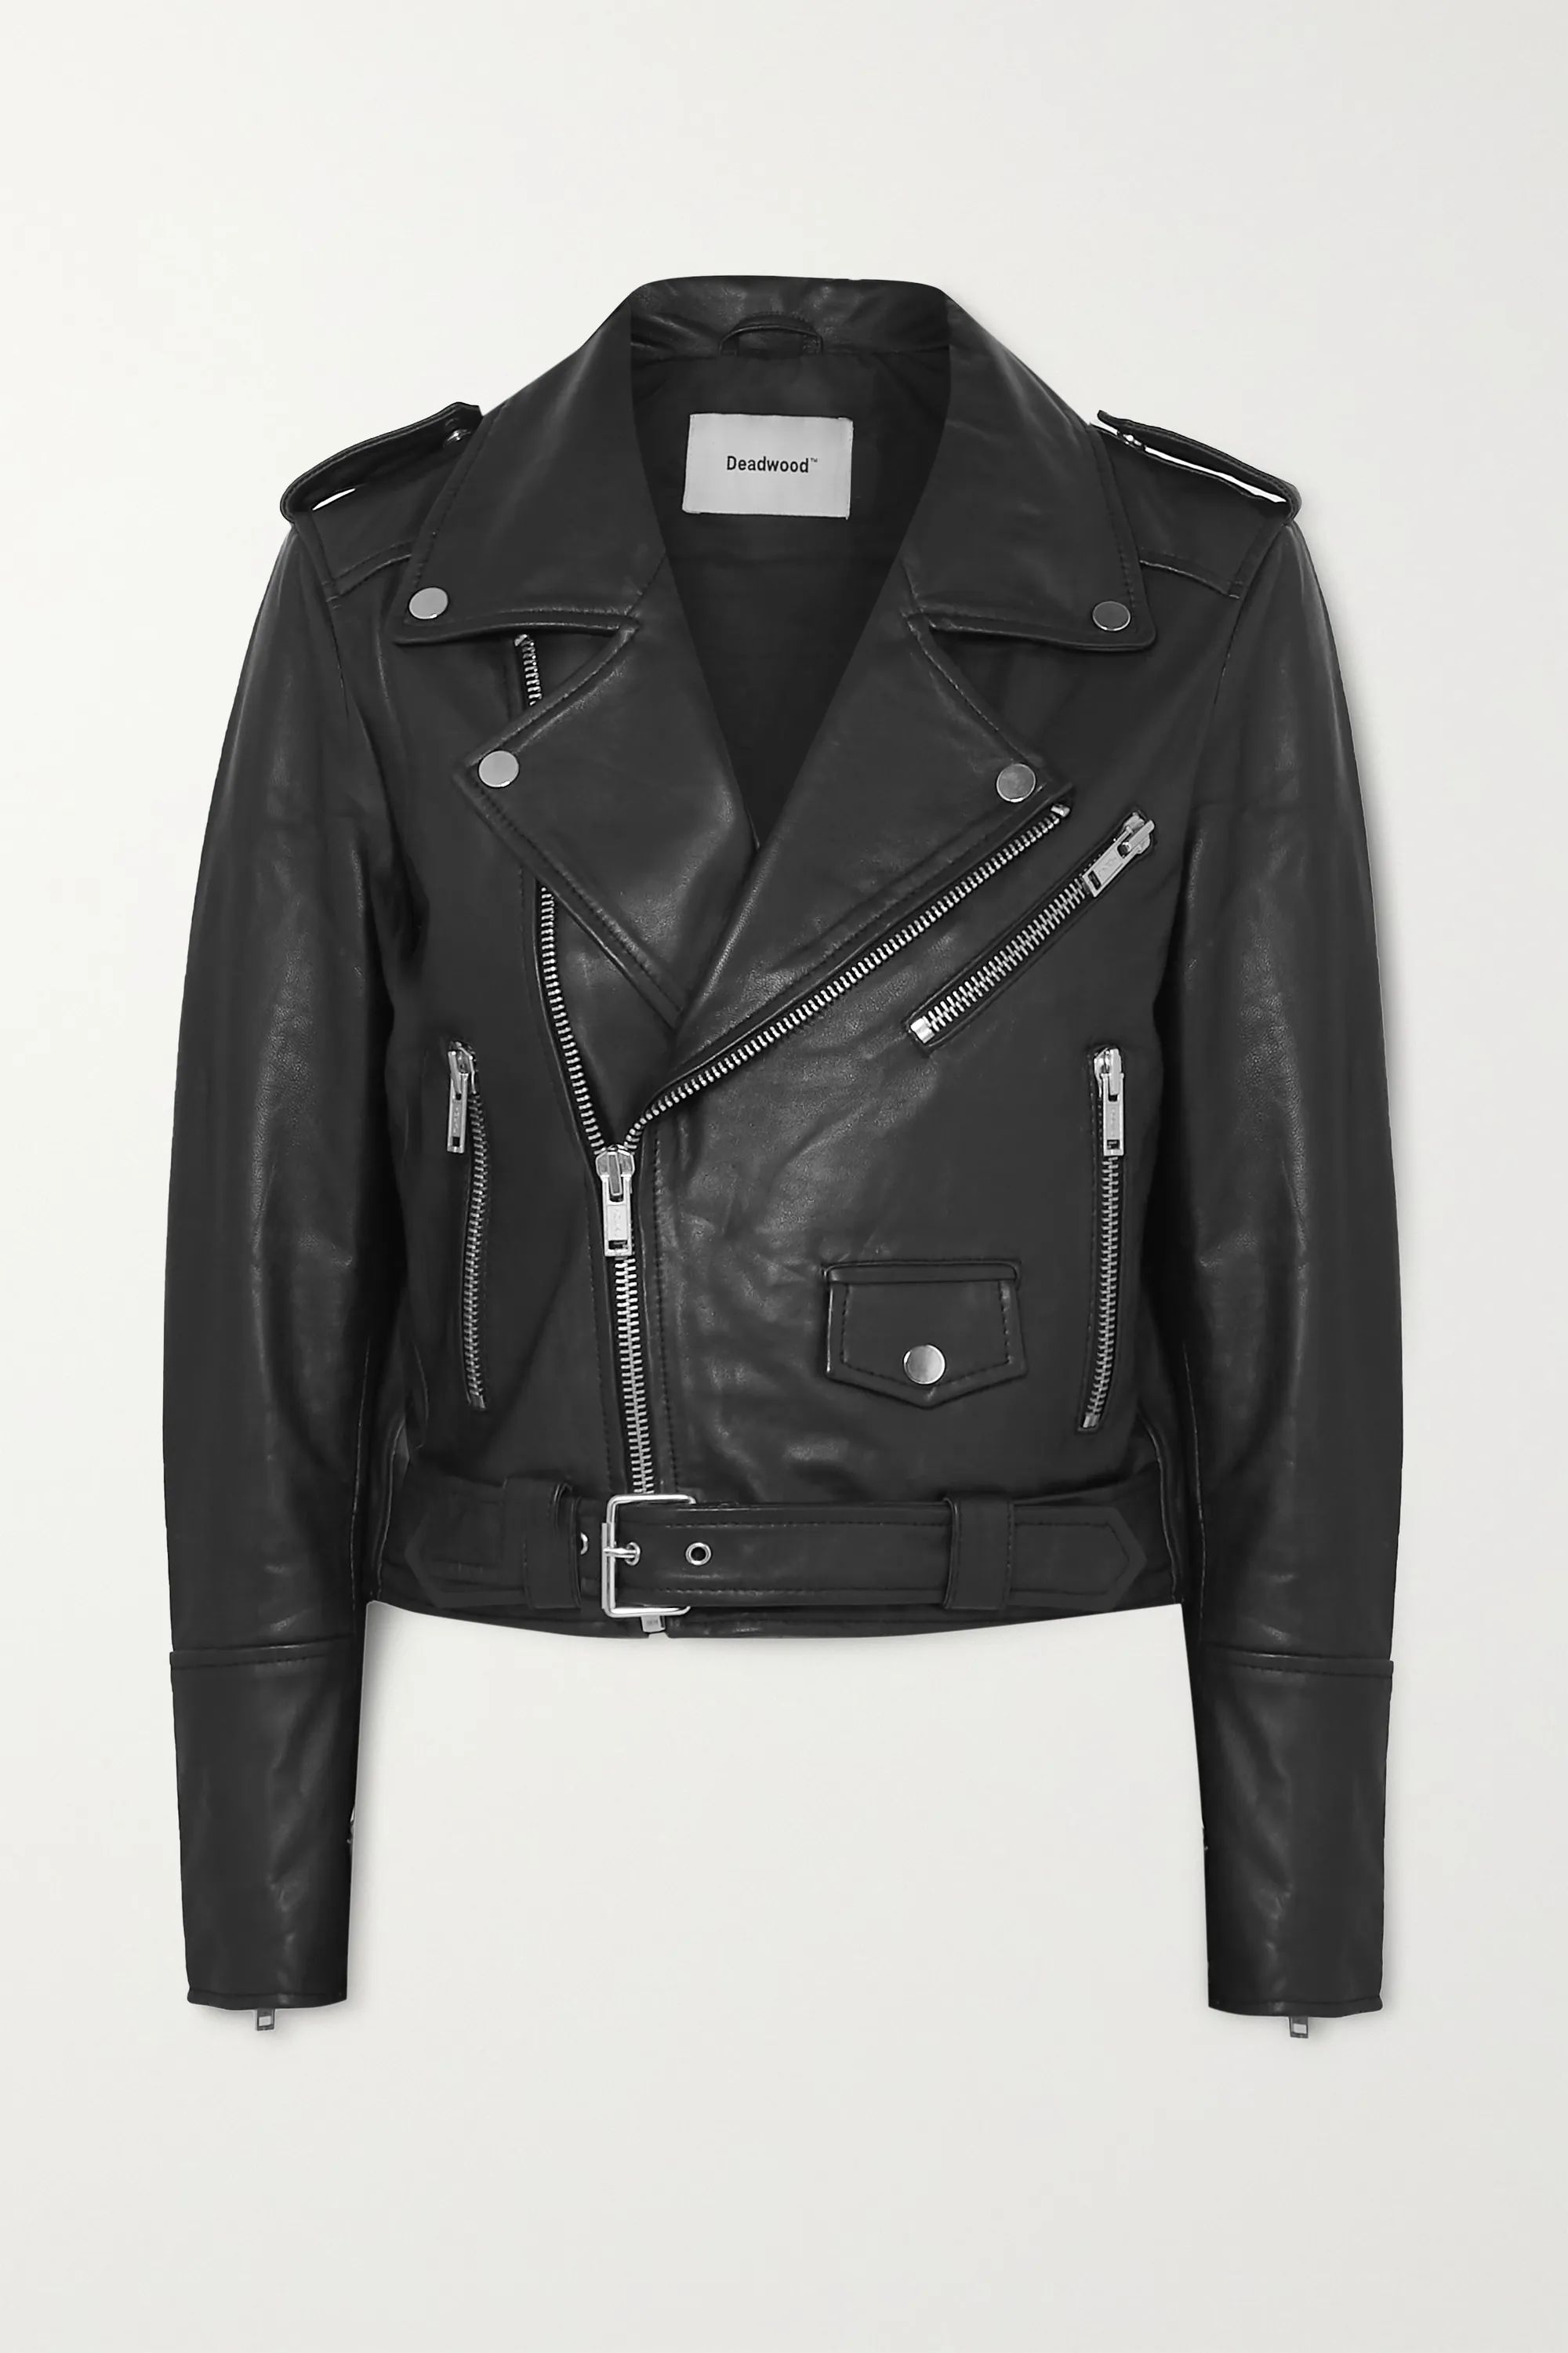 Black + NET SUSTAIN Joan leather biker jacket | Deadwood | NET-A-PORTER | NET-A-PORTER (US)